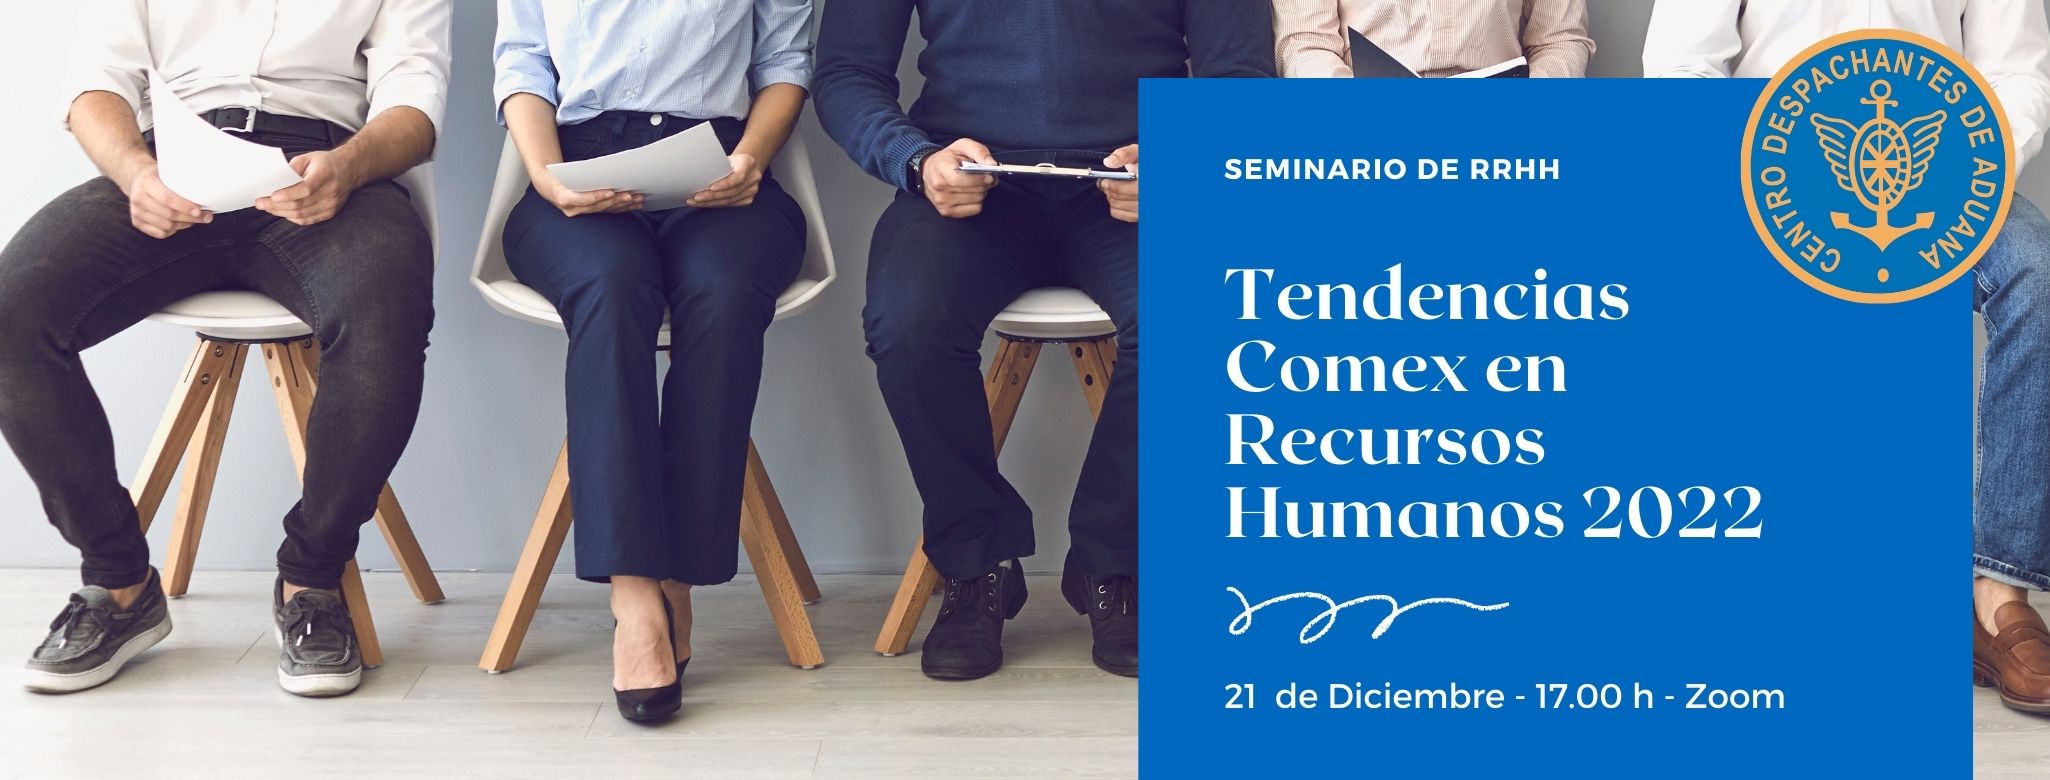 CDA - Centro Despachantes de Aduana de la Republica Argentina - Seminario  online: Tendencias Comex en Recursos Humanos 2022